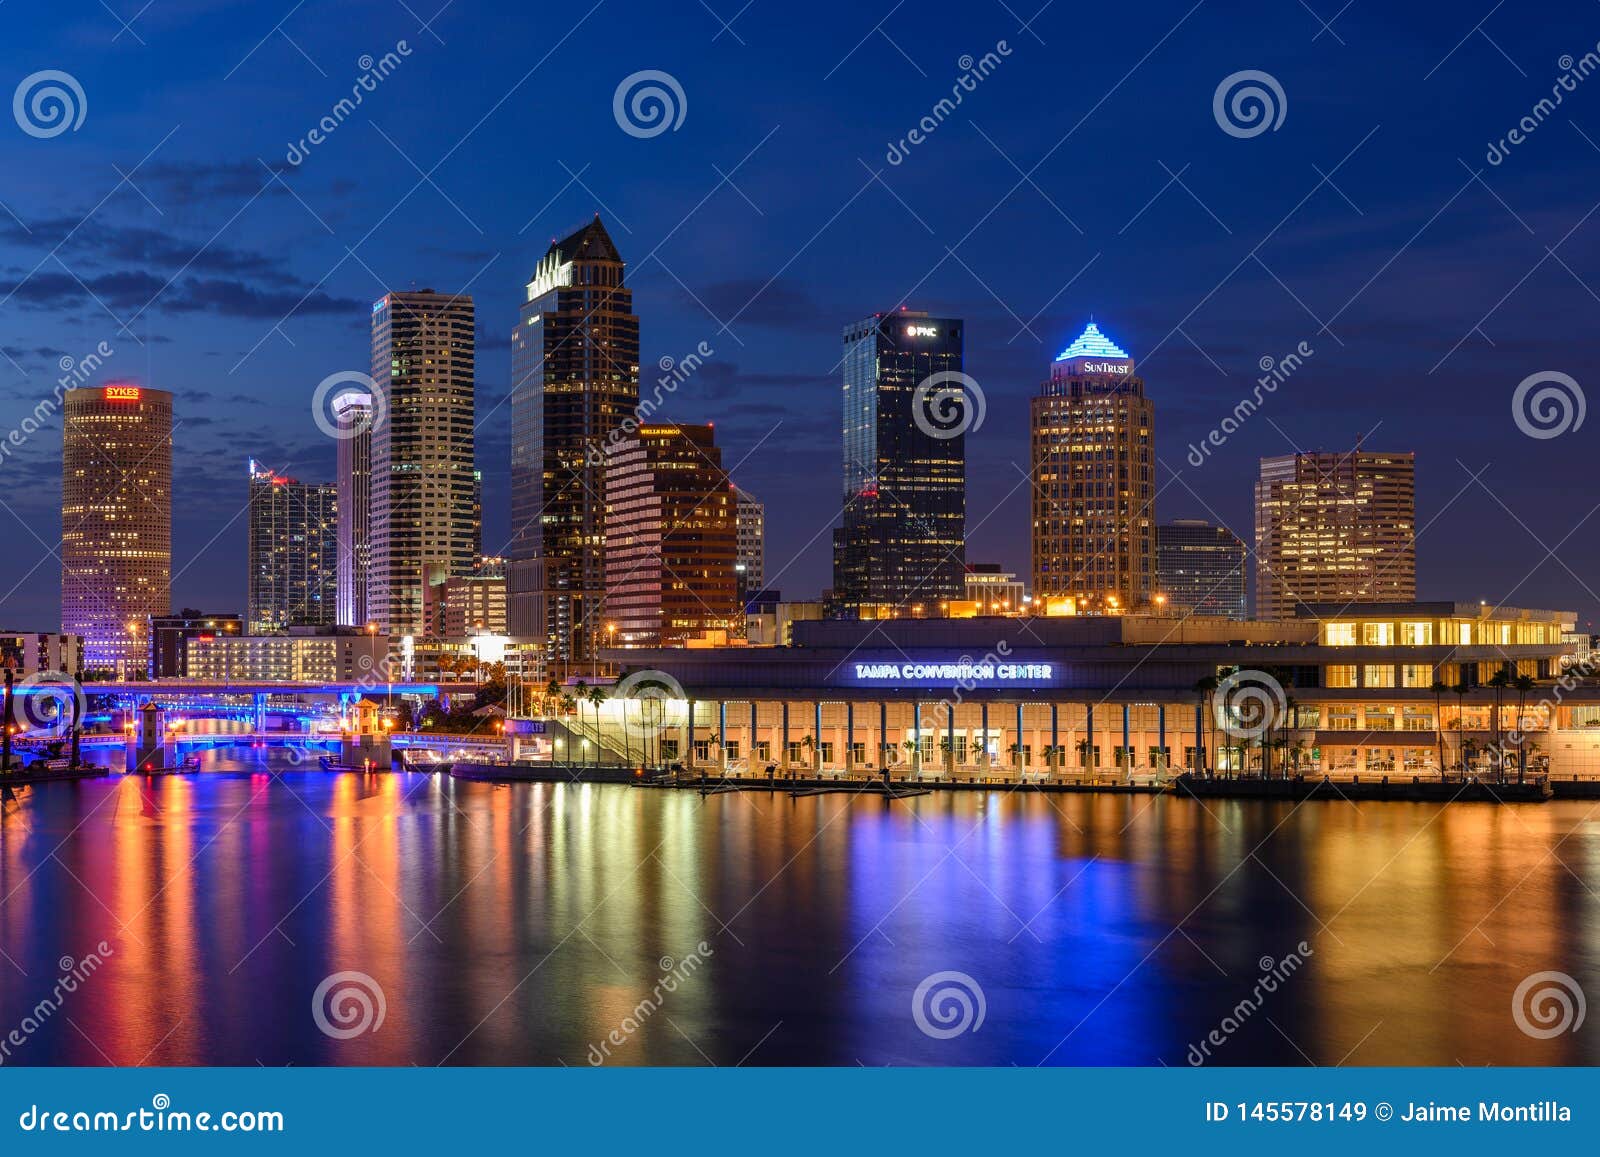 Skyline de Tampa na hora azul. Skyline de Tampa Bay com construções iluminadas durante a hora azul antes dos grupos da noite